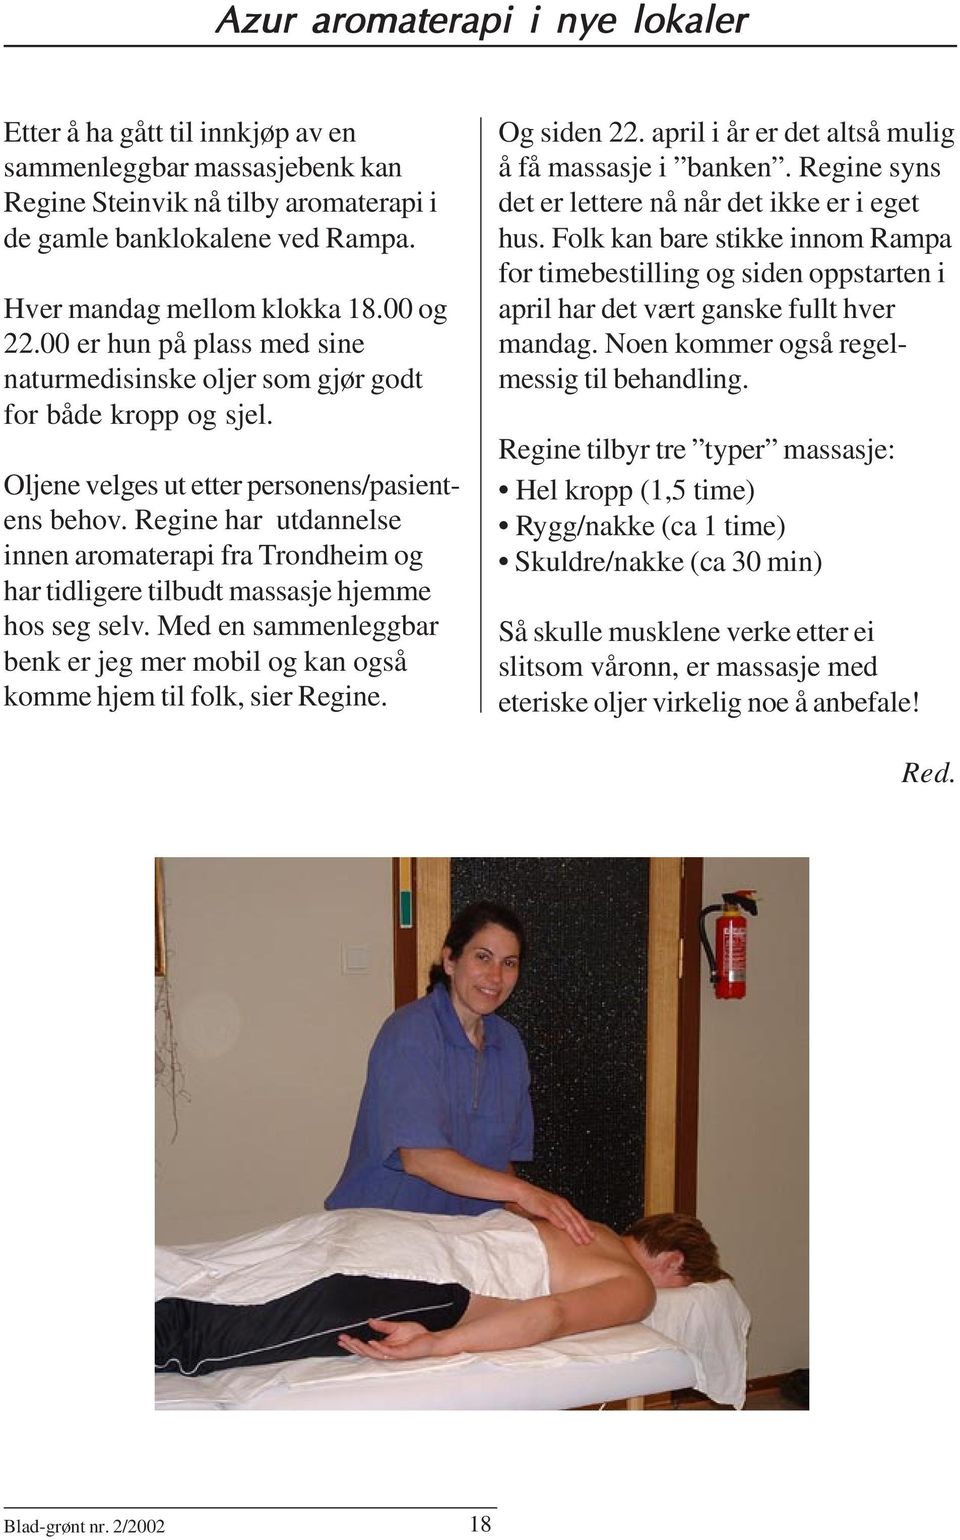 Regine har utdannelse innen aromaterapi fra Trondheim og har tidligere tilbudt massasje hjemme hos seg selv. Med en sammenleggbar benk er jeg mer mobil og kan også komme hjem til folk, sier Regine.